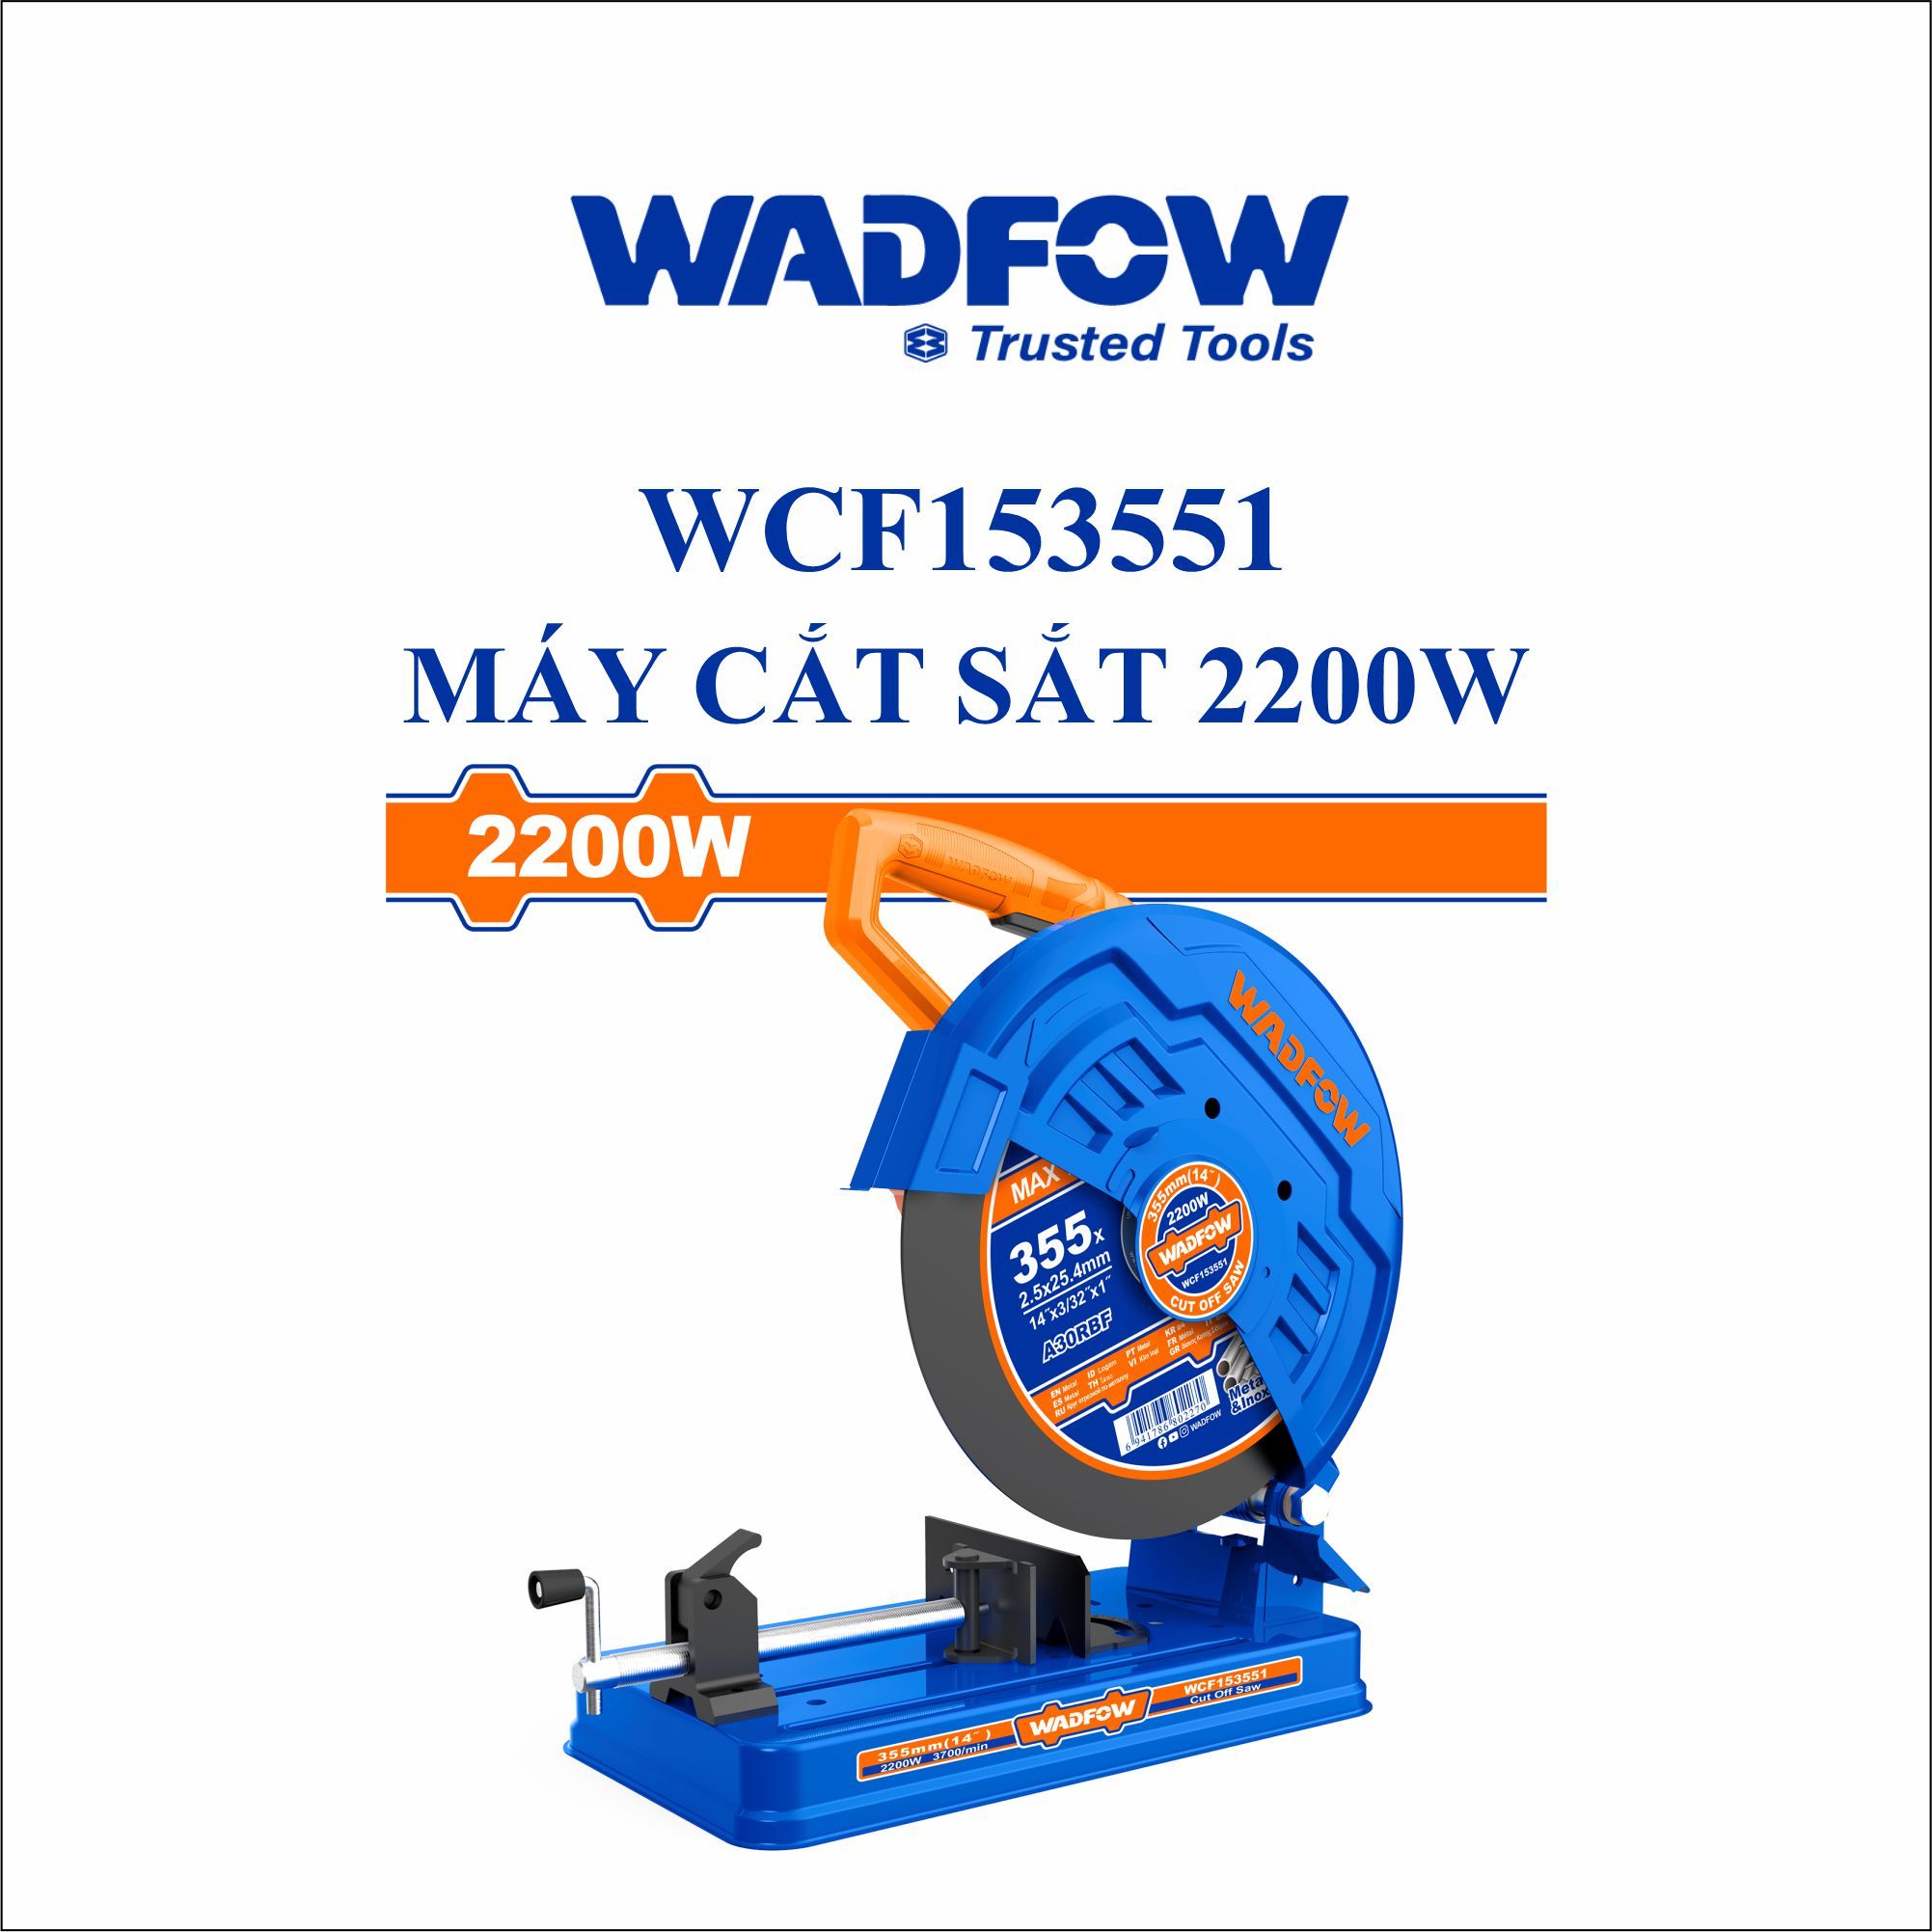  Máy cắt sắt 2200W WADFOW WCF153551 